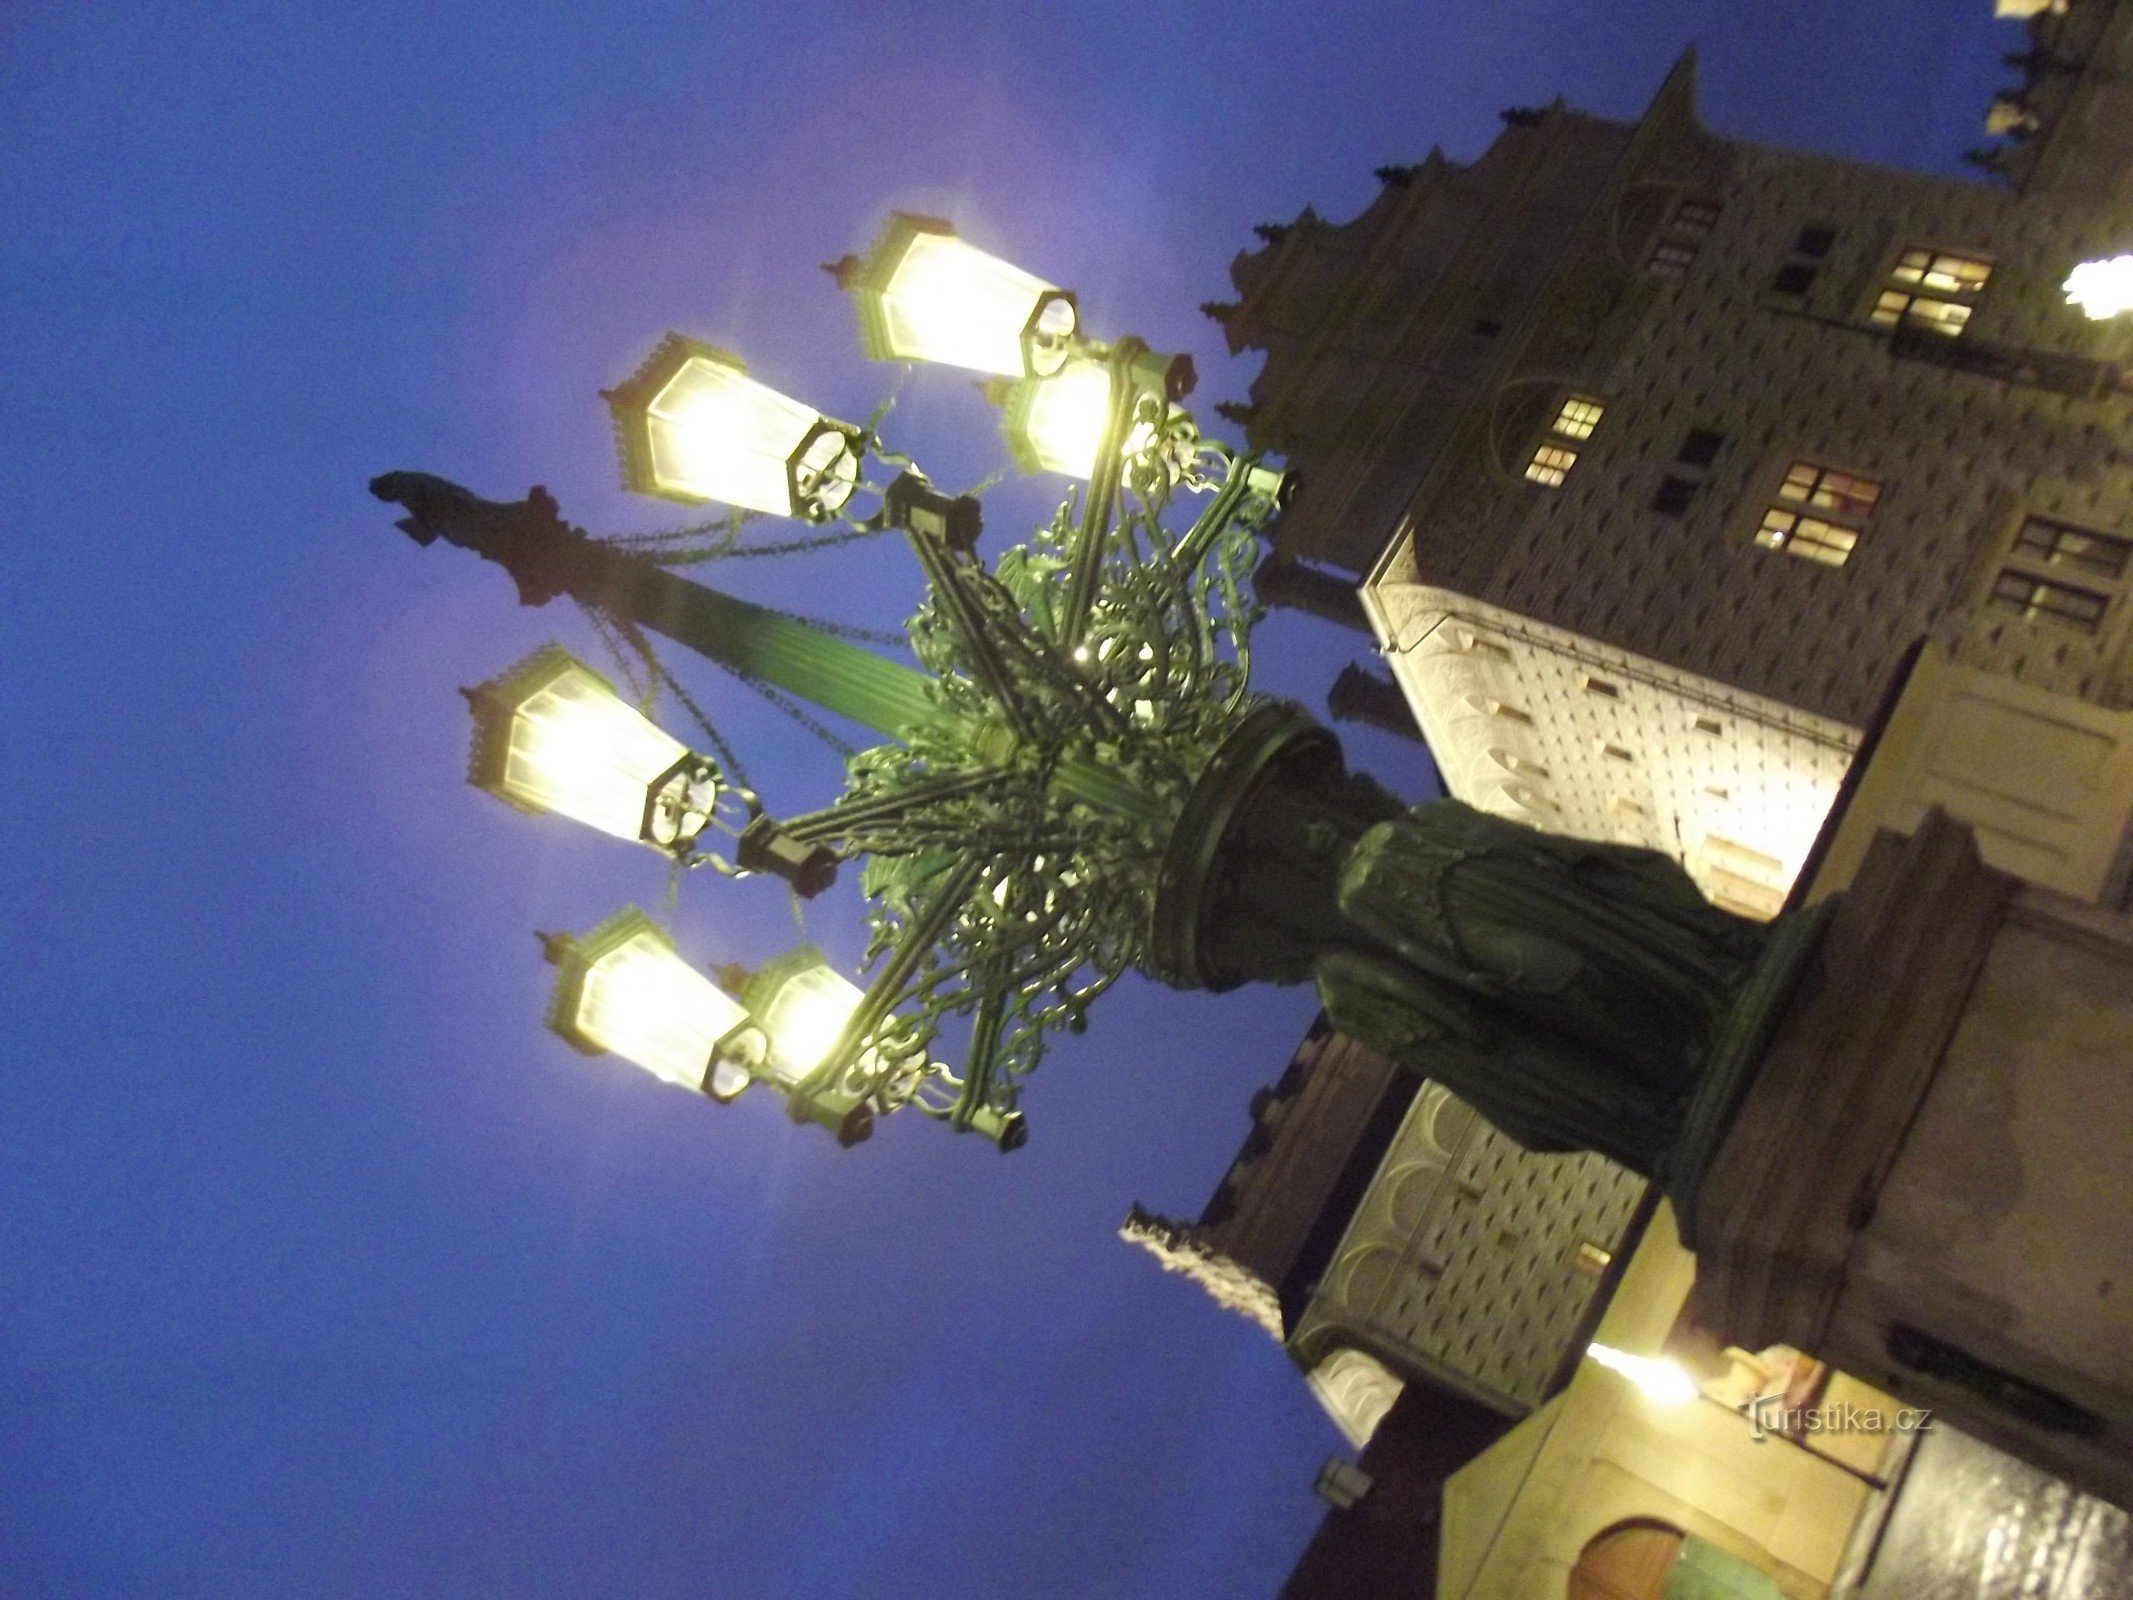 Prague, Hradčany - cột đèn trên quảng trường Hradčany